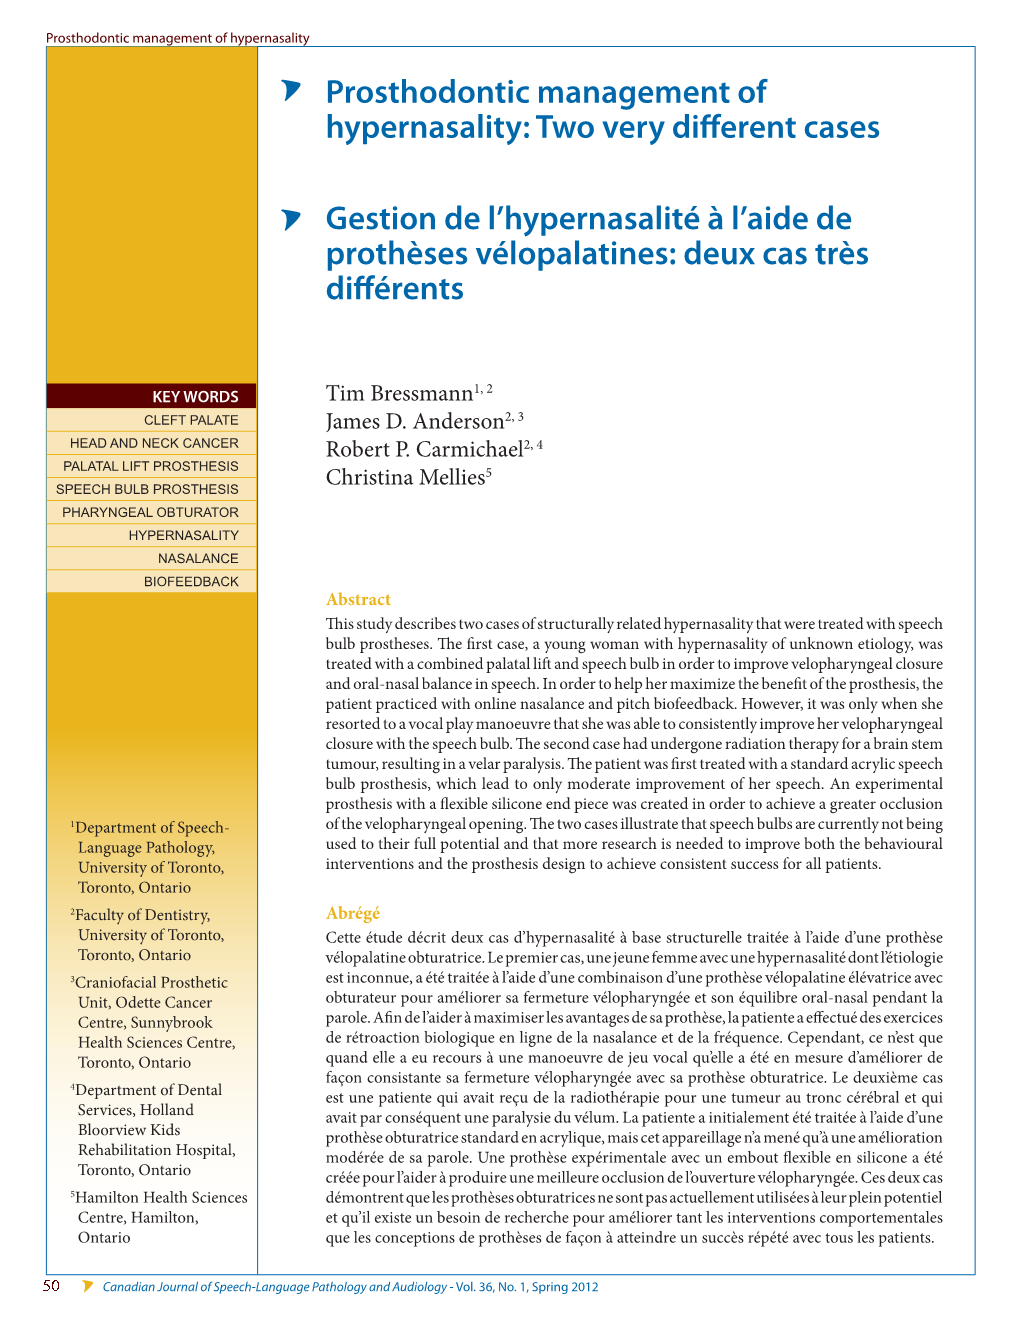 Prosthodontic Management of Hypernasality Prosthodontic Management of Hypernasality: Two Very Different Cases